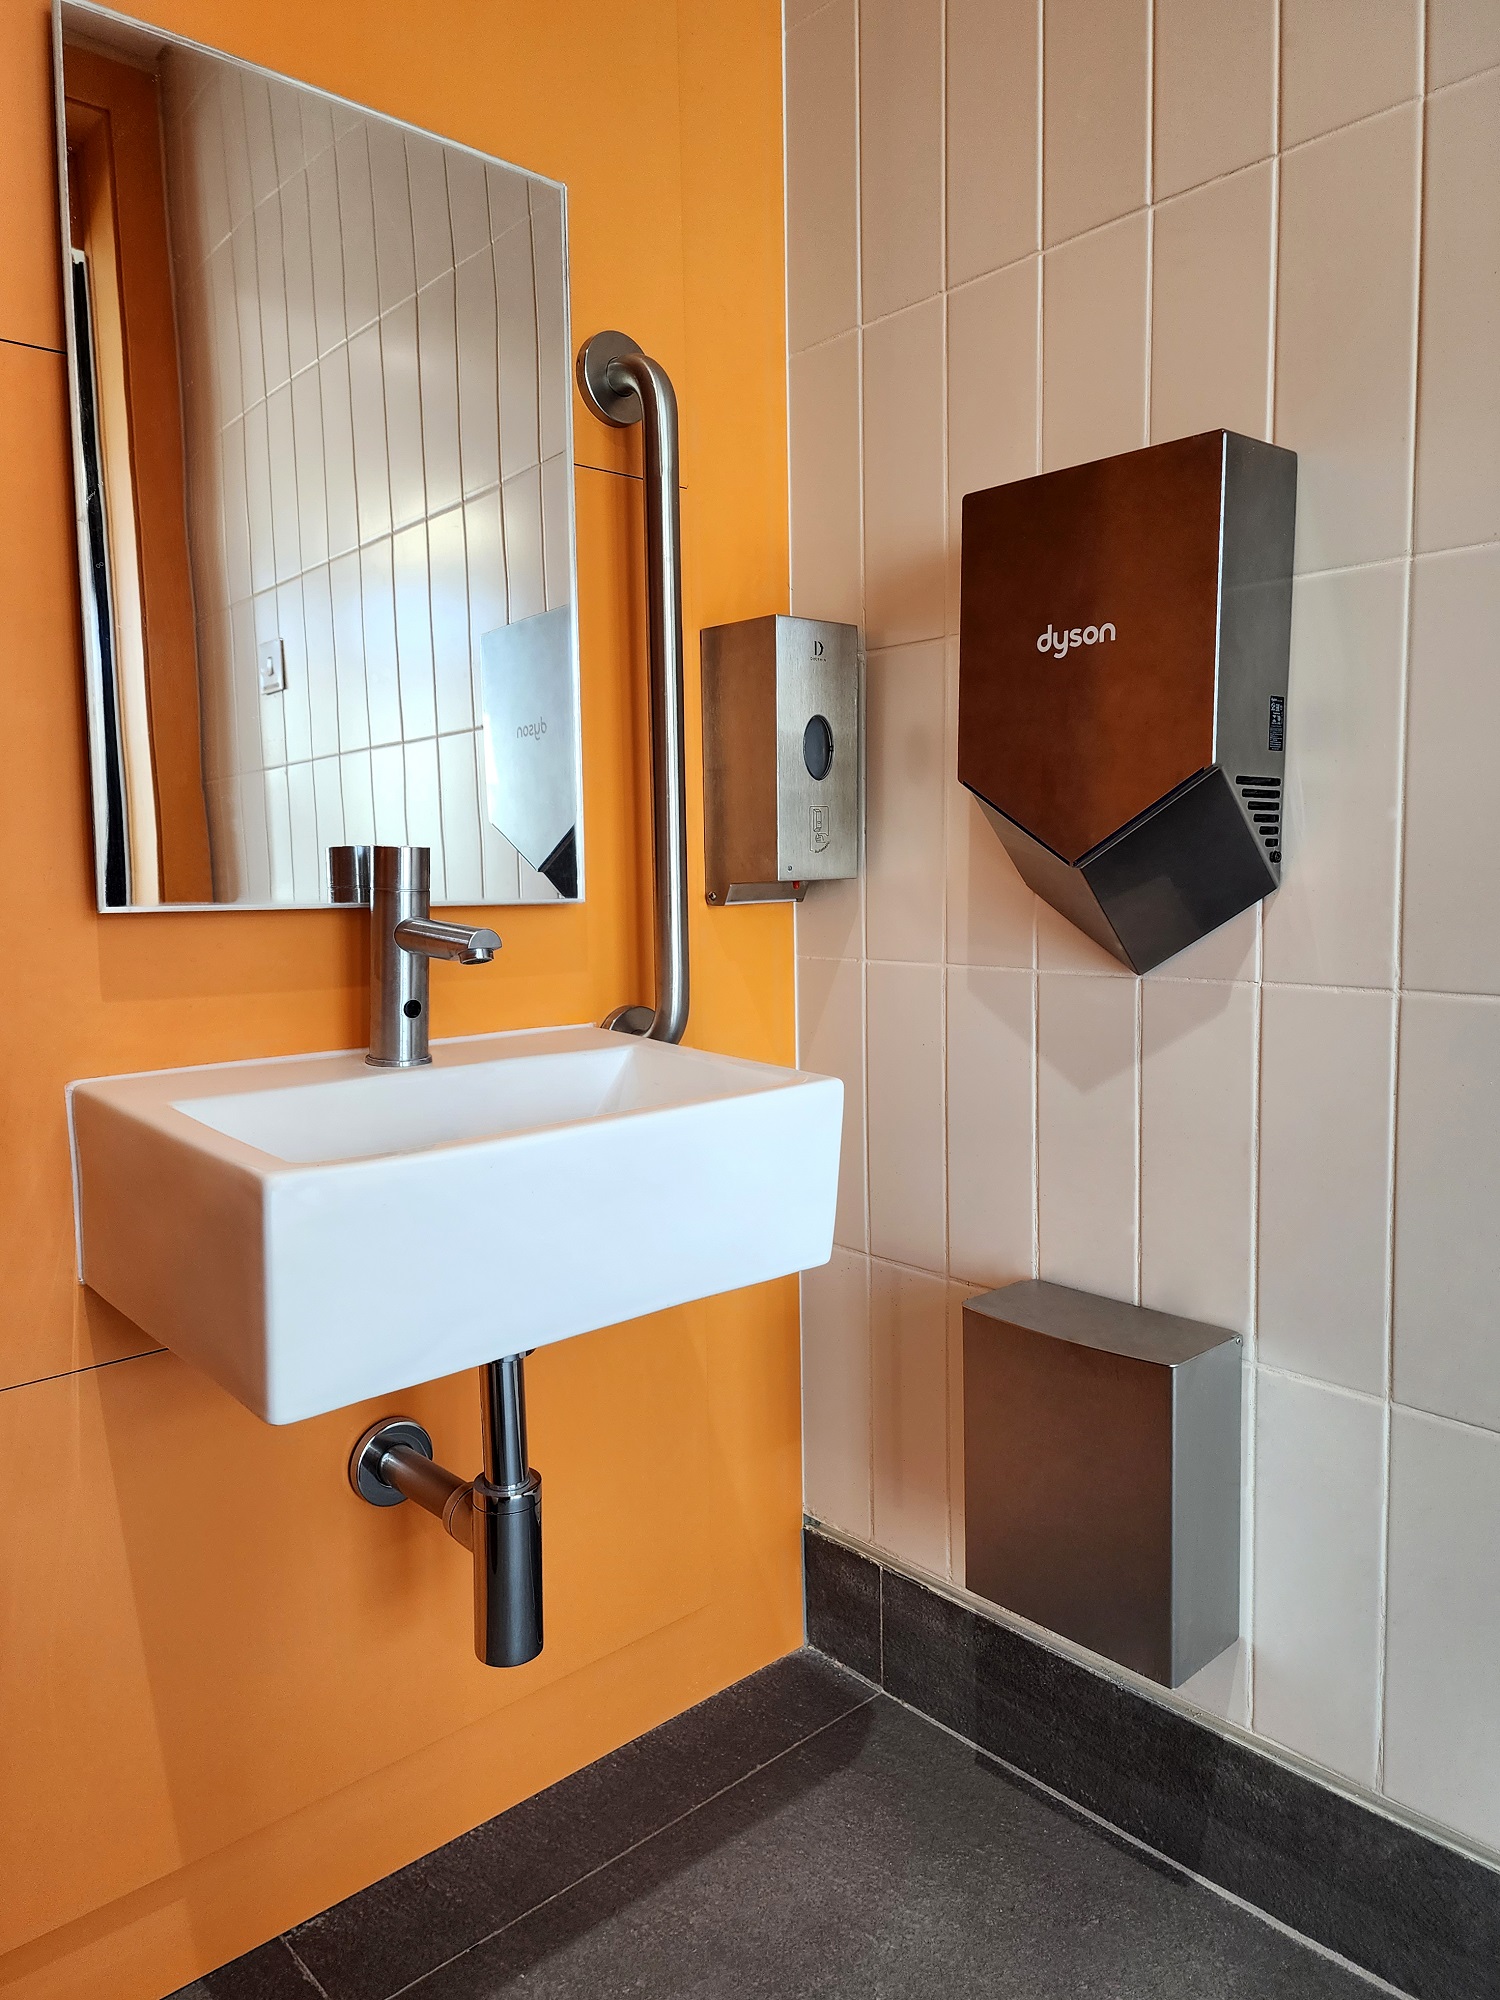 The advantages of smarter washroom design